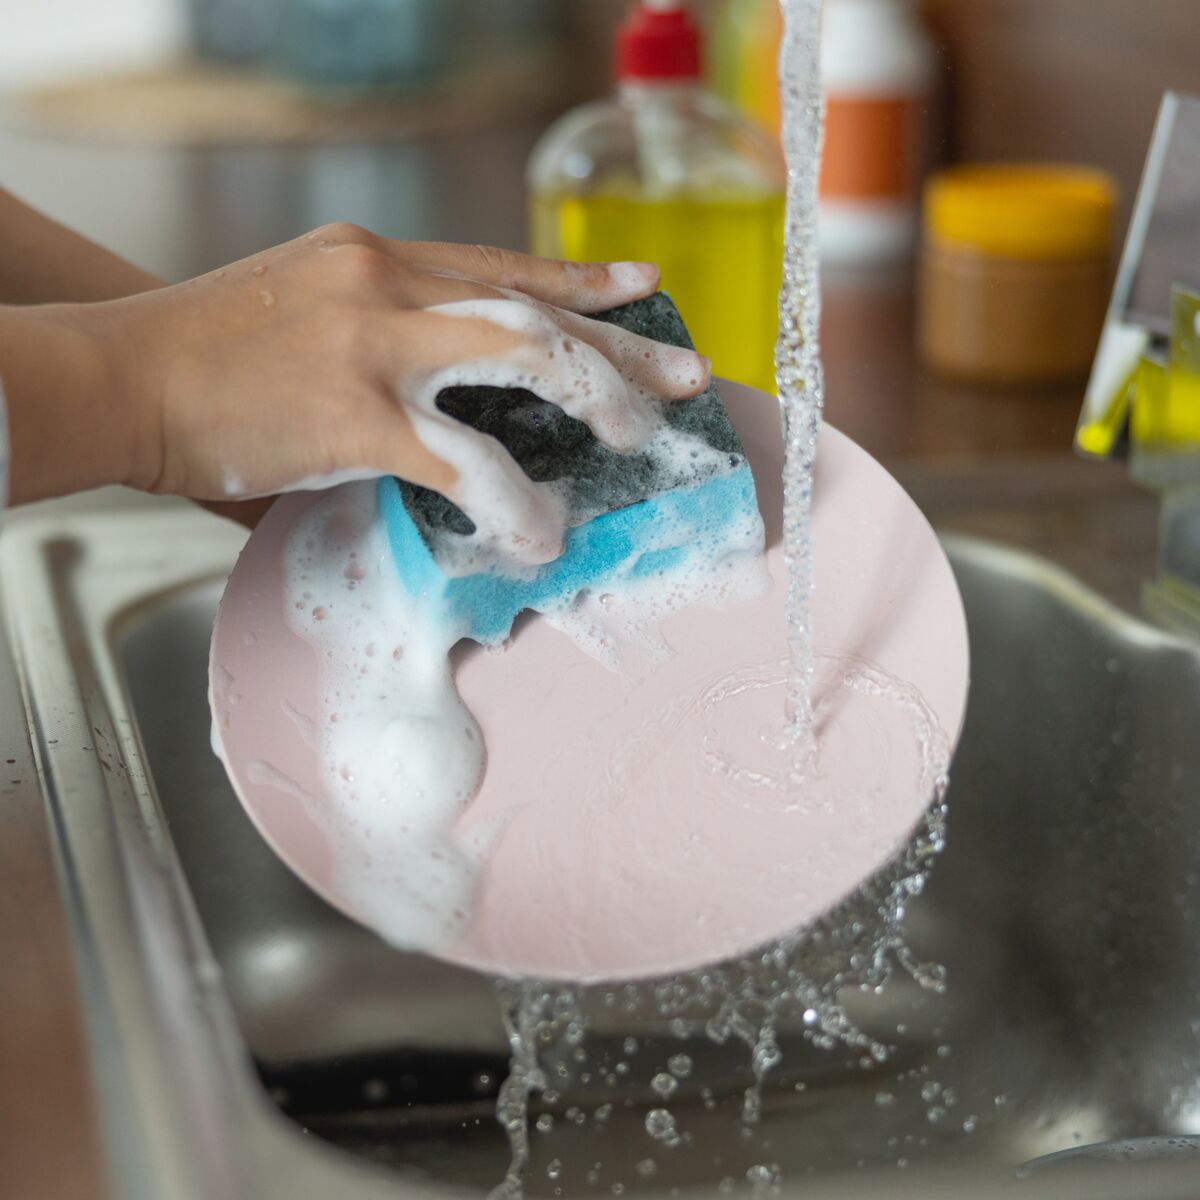 Vaisselle : vaut-il mieux la faire à l'éponge ou à la brosse ? Une étude  répond : Femme Actuelle Le MAG